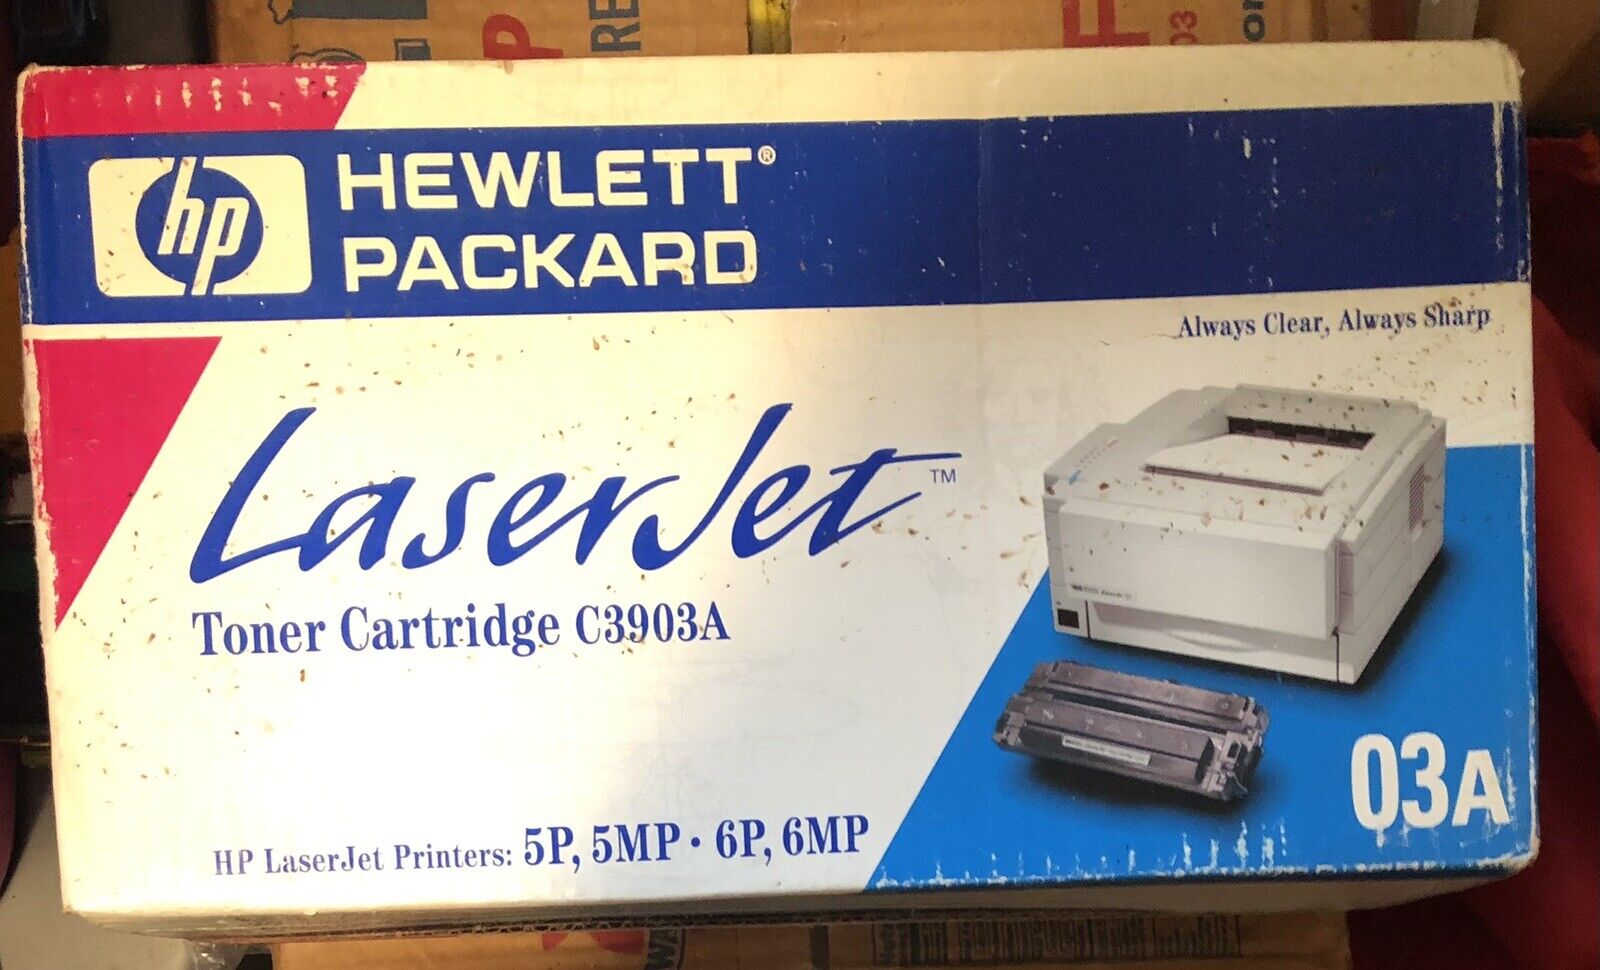 Hewlett Packard Laser jet Toner Cartridge C3903A